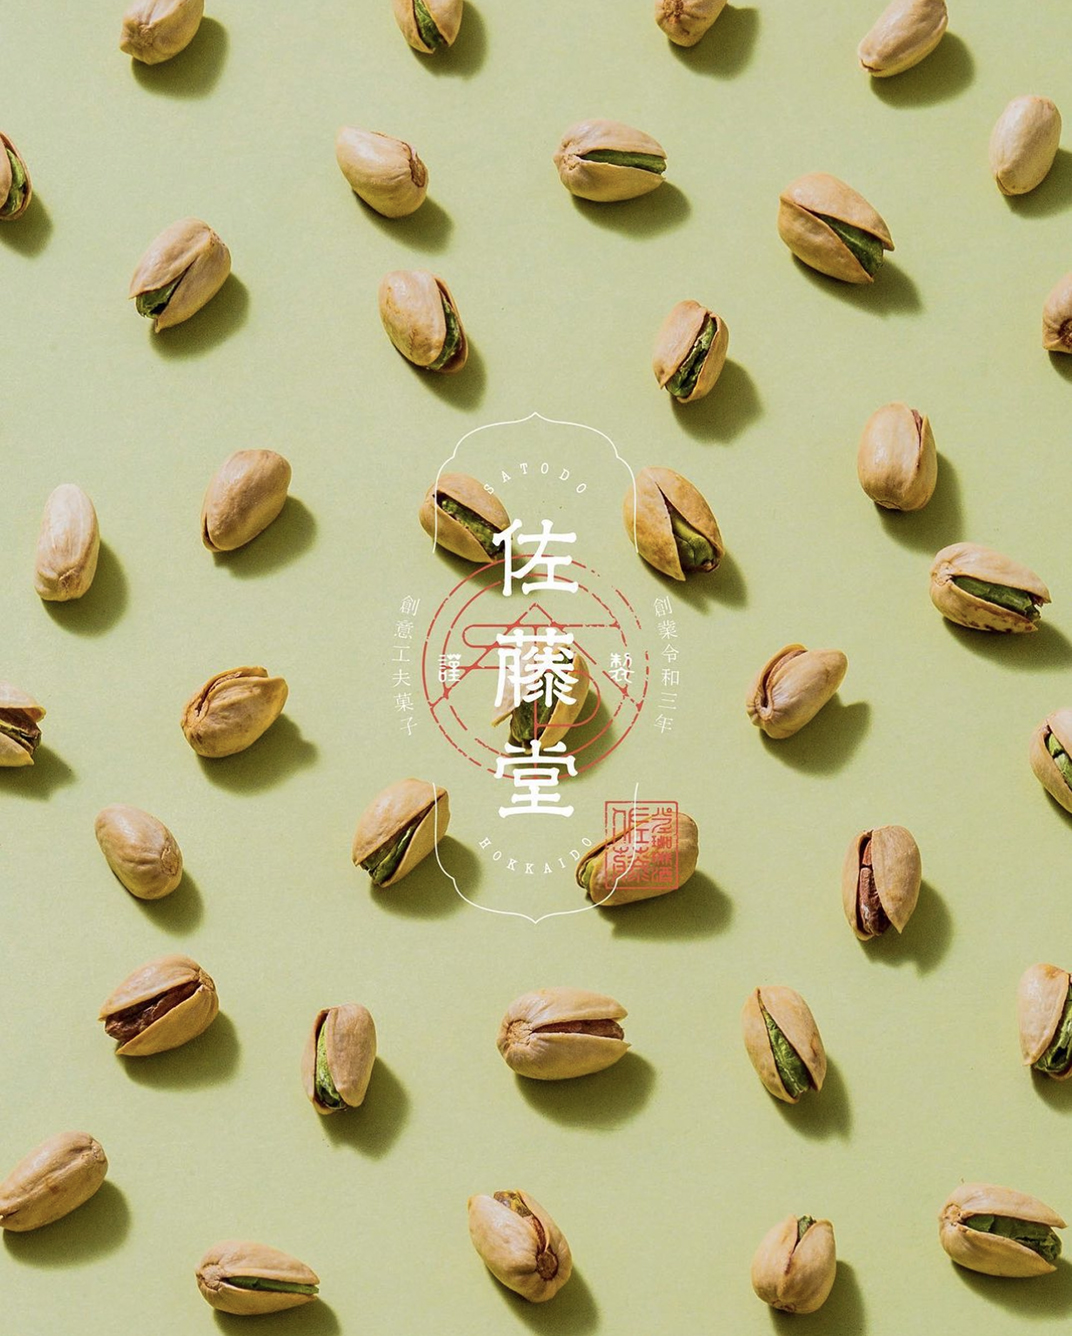 佐藤堂品牌形象设计 北京 上海 成都 武汉 杭州 广州 日本 木材 logo设计 vi设计 空间设计